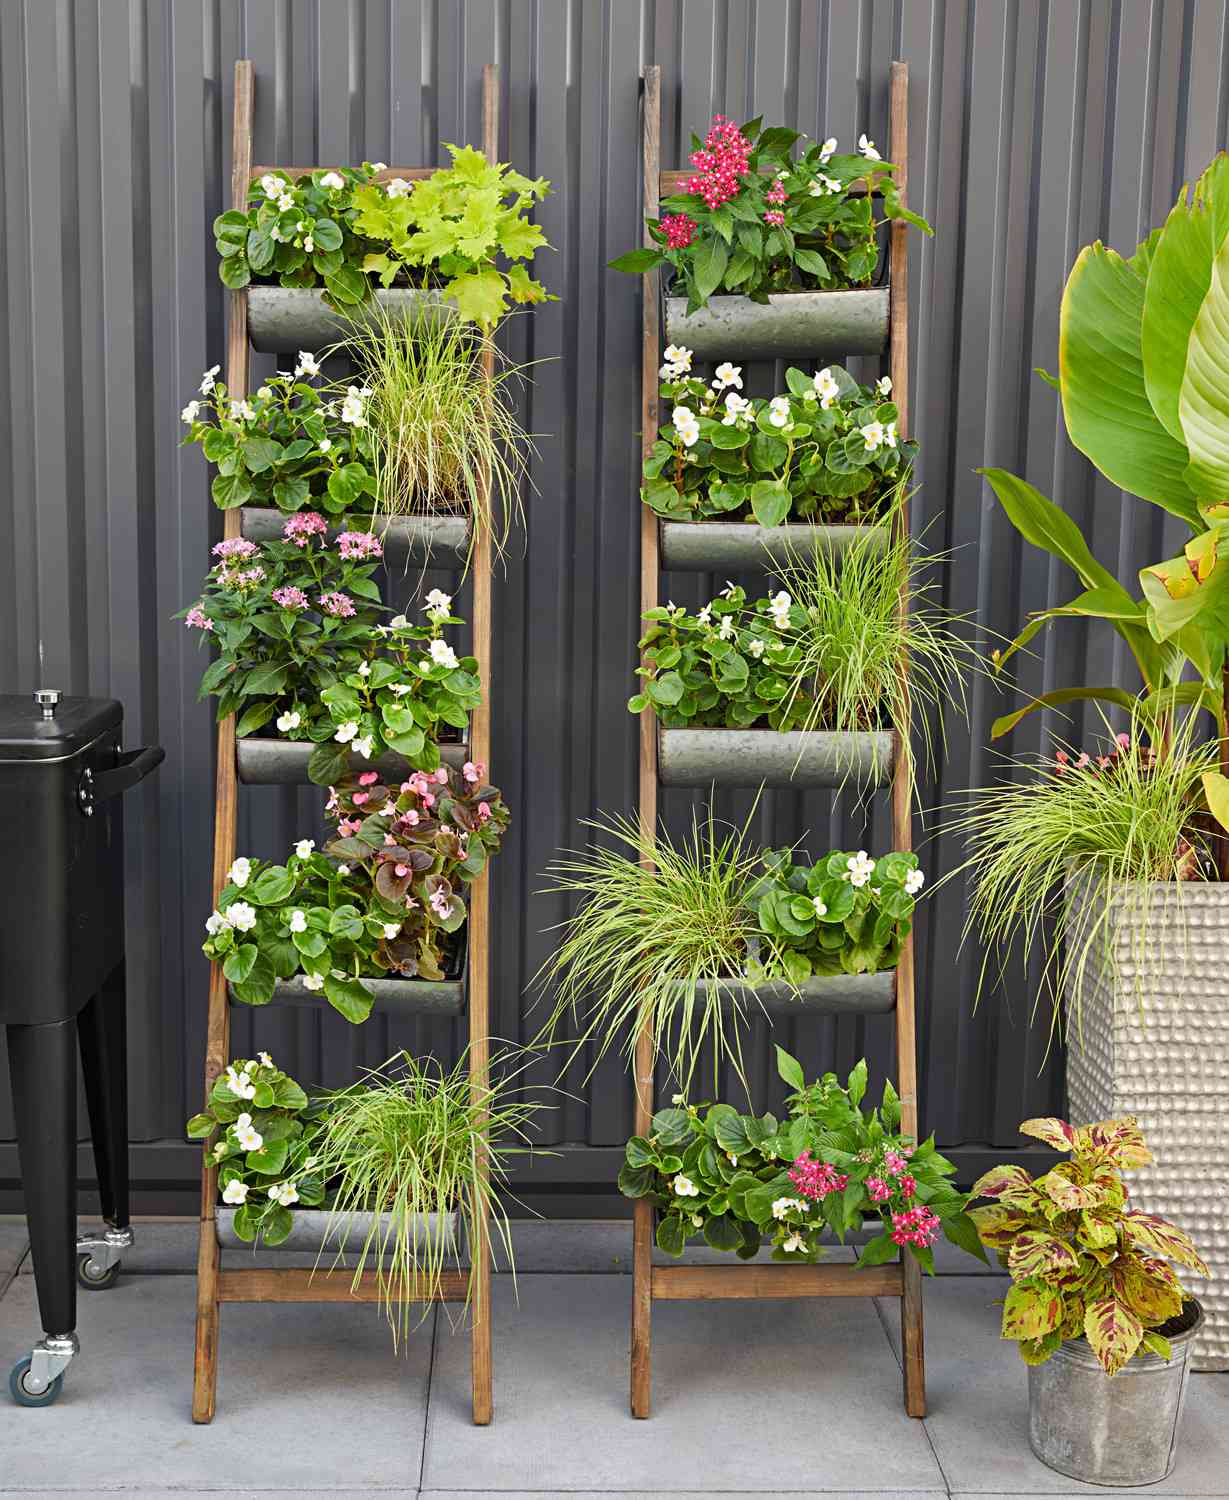 containers superbe gradina proiecte absolut springtime topsdecor grow clatsopnews colorate curte flori